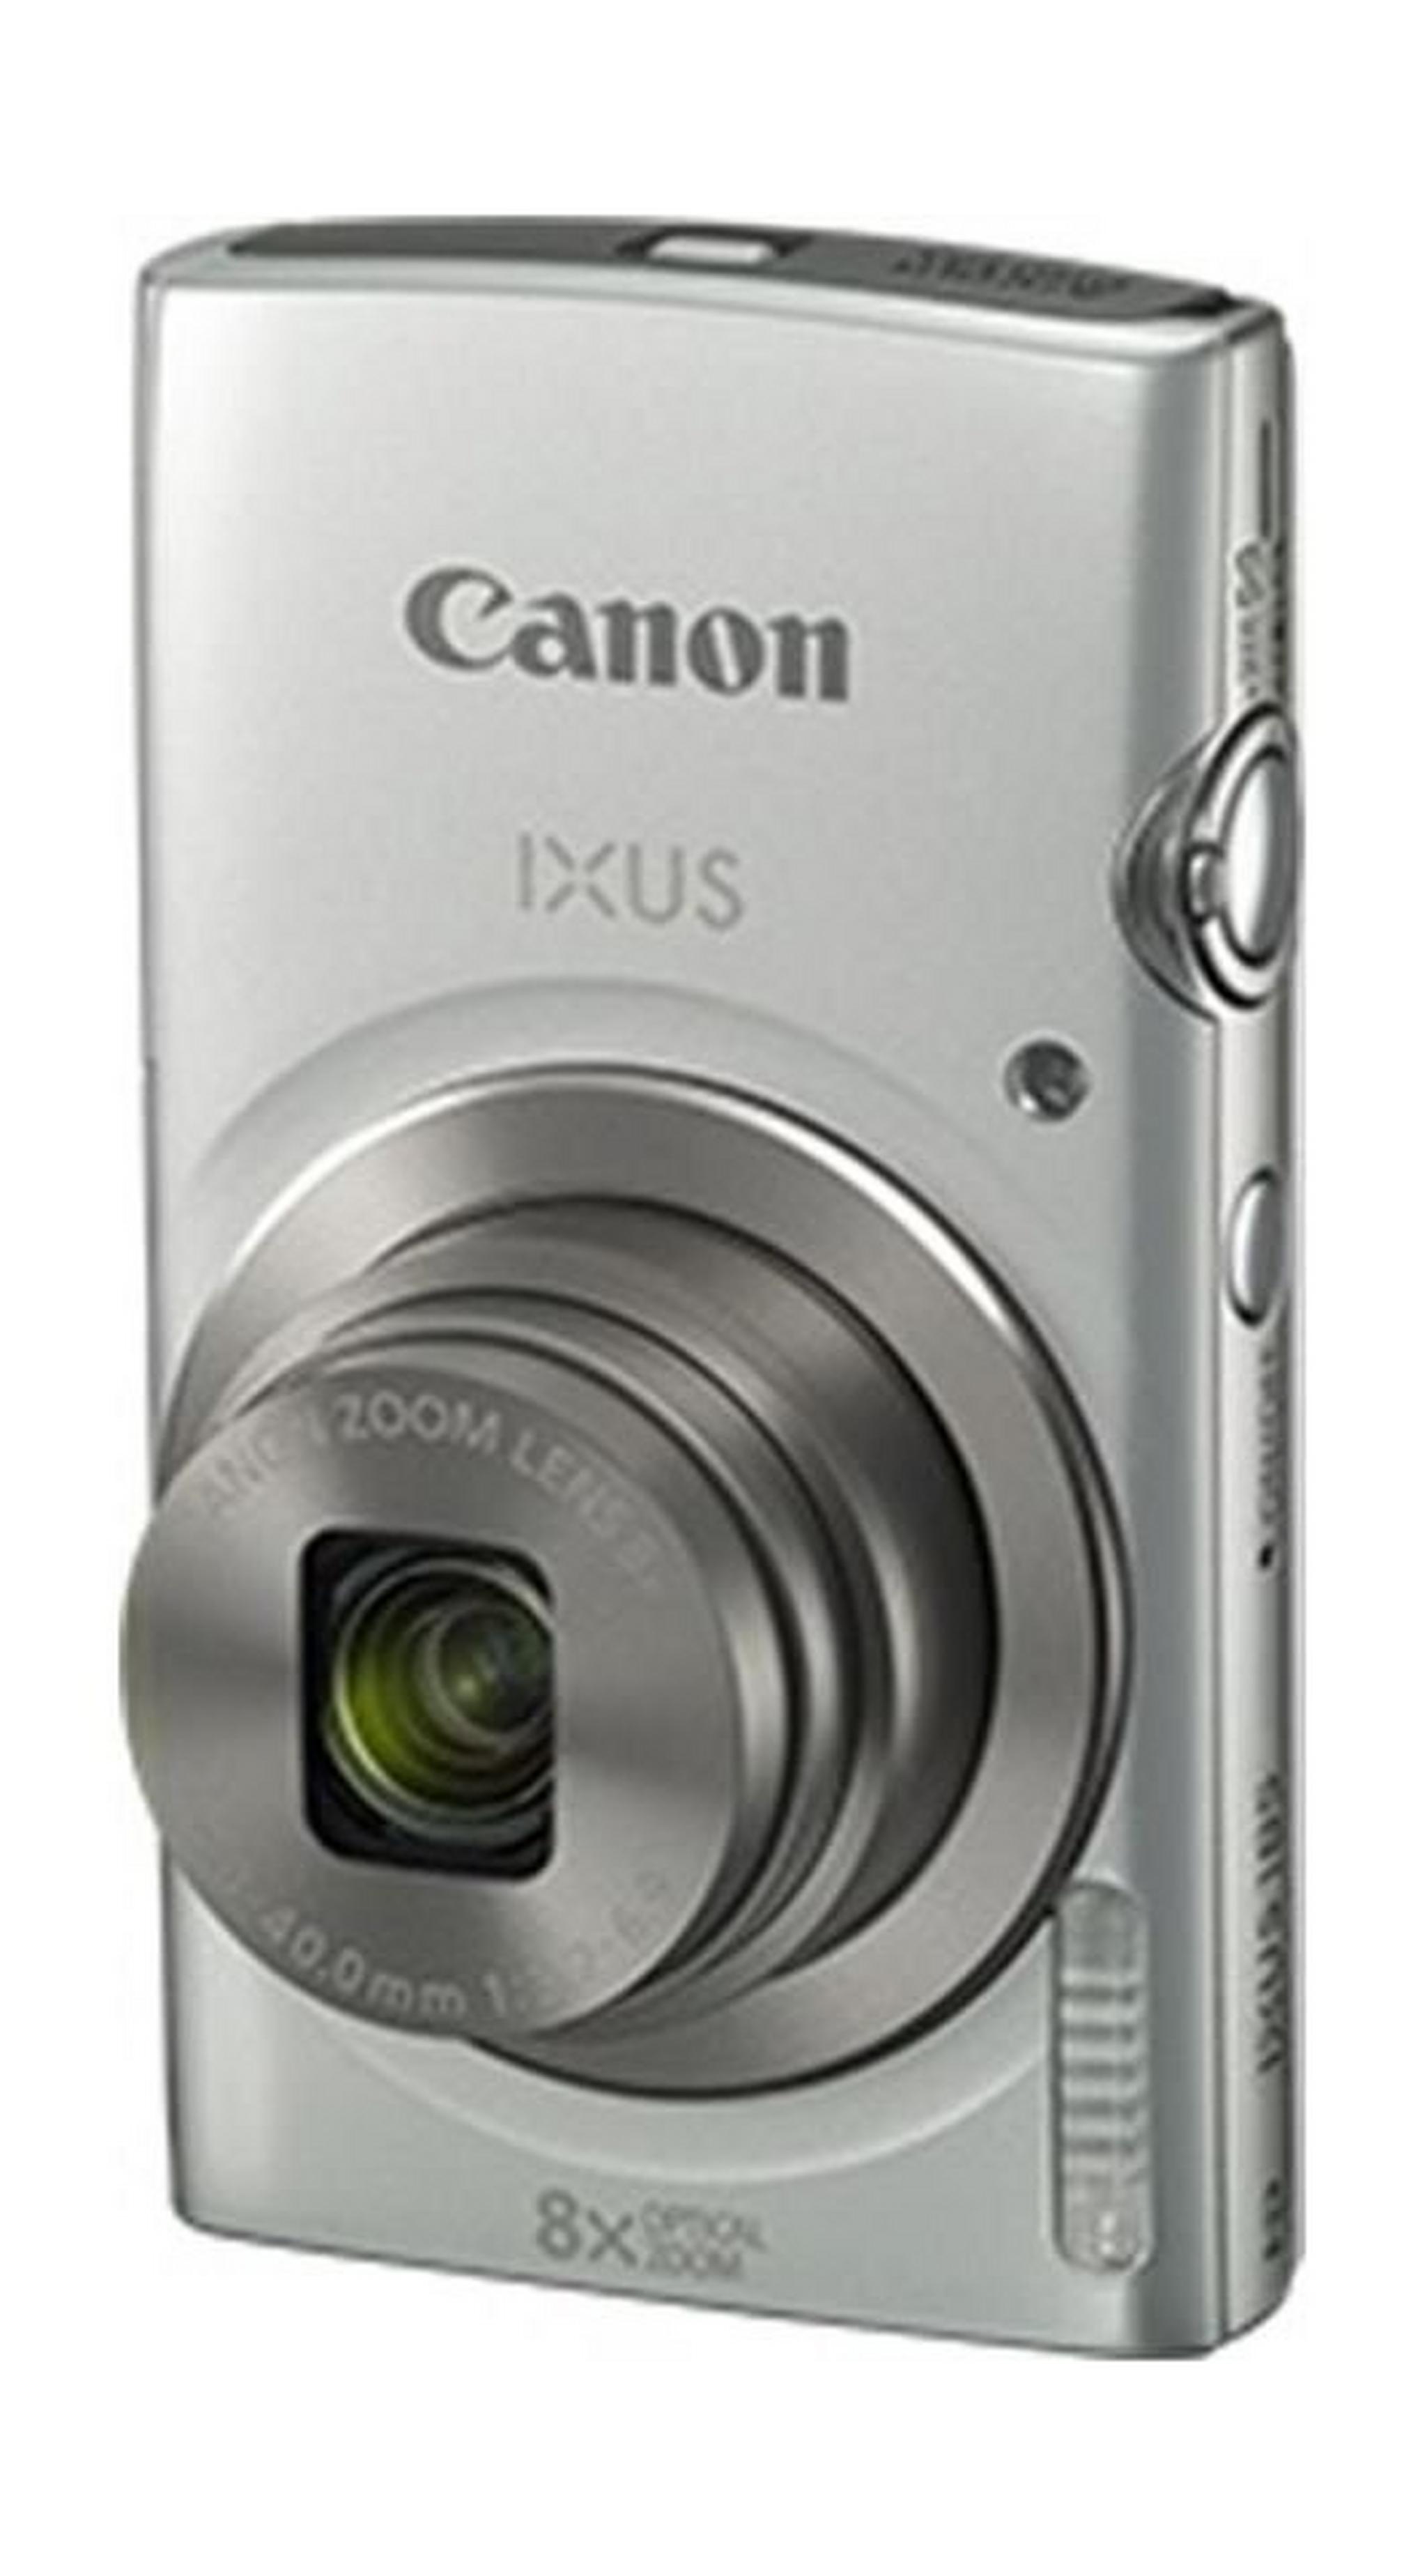 كاميرا كانون إكسيس ١٨٥ الرقمية - ٢٠ ميجابكسل - شاشة إل سي دي  ٢,٧ بوصة - فضي